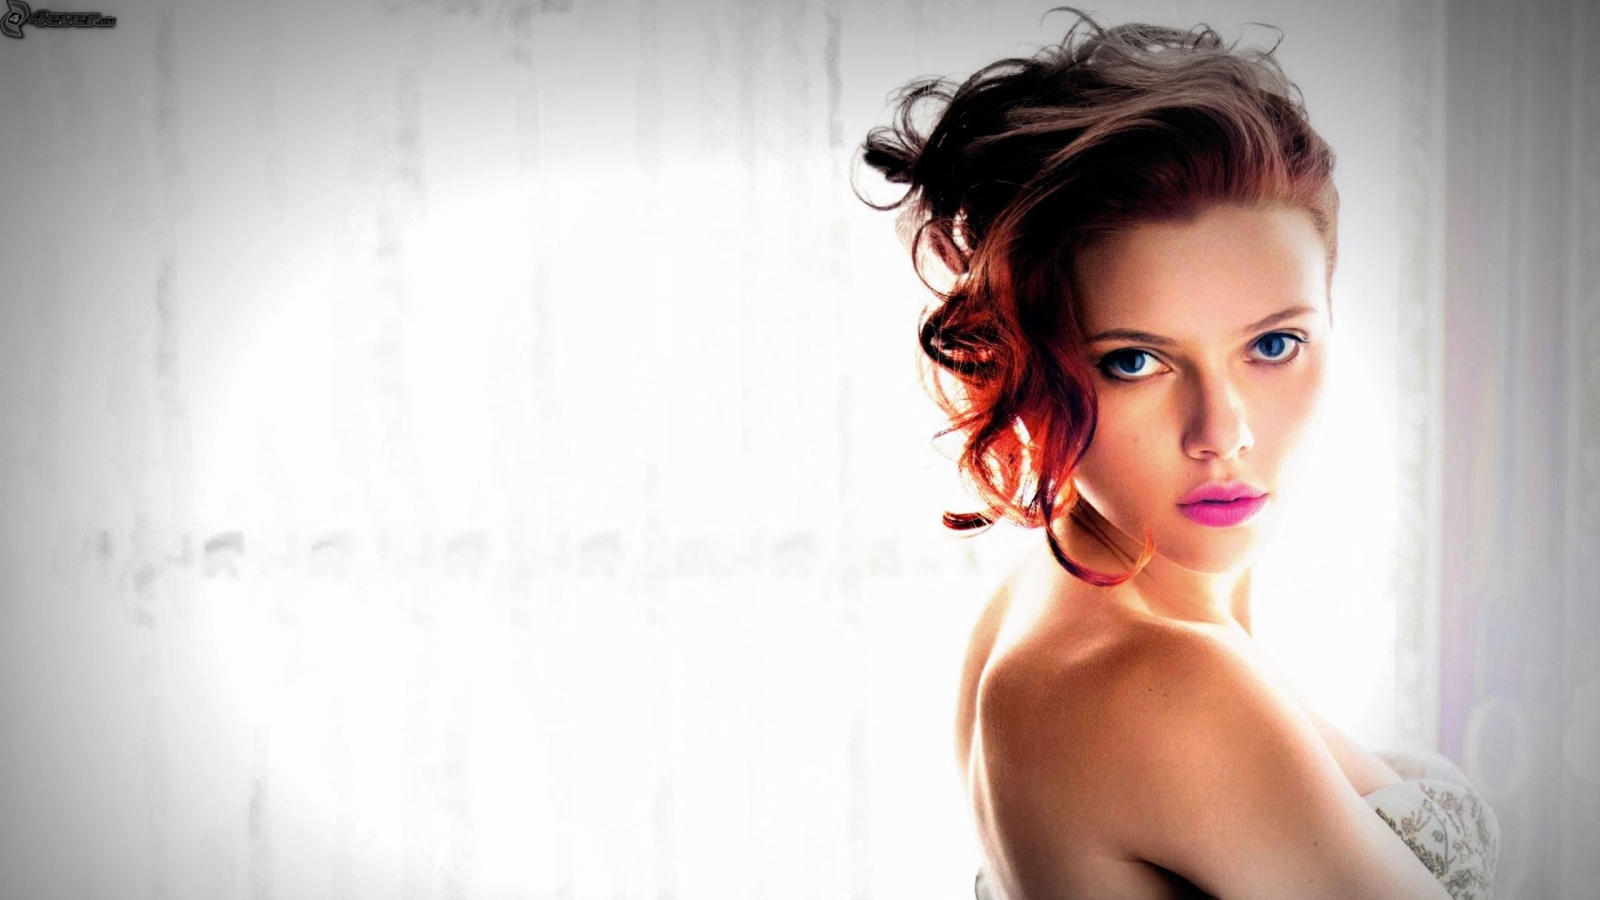 Scarlett Johansson Blue Eyes for 1600 x 900 HDTV resolution